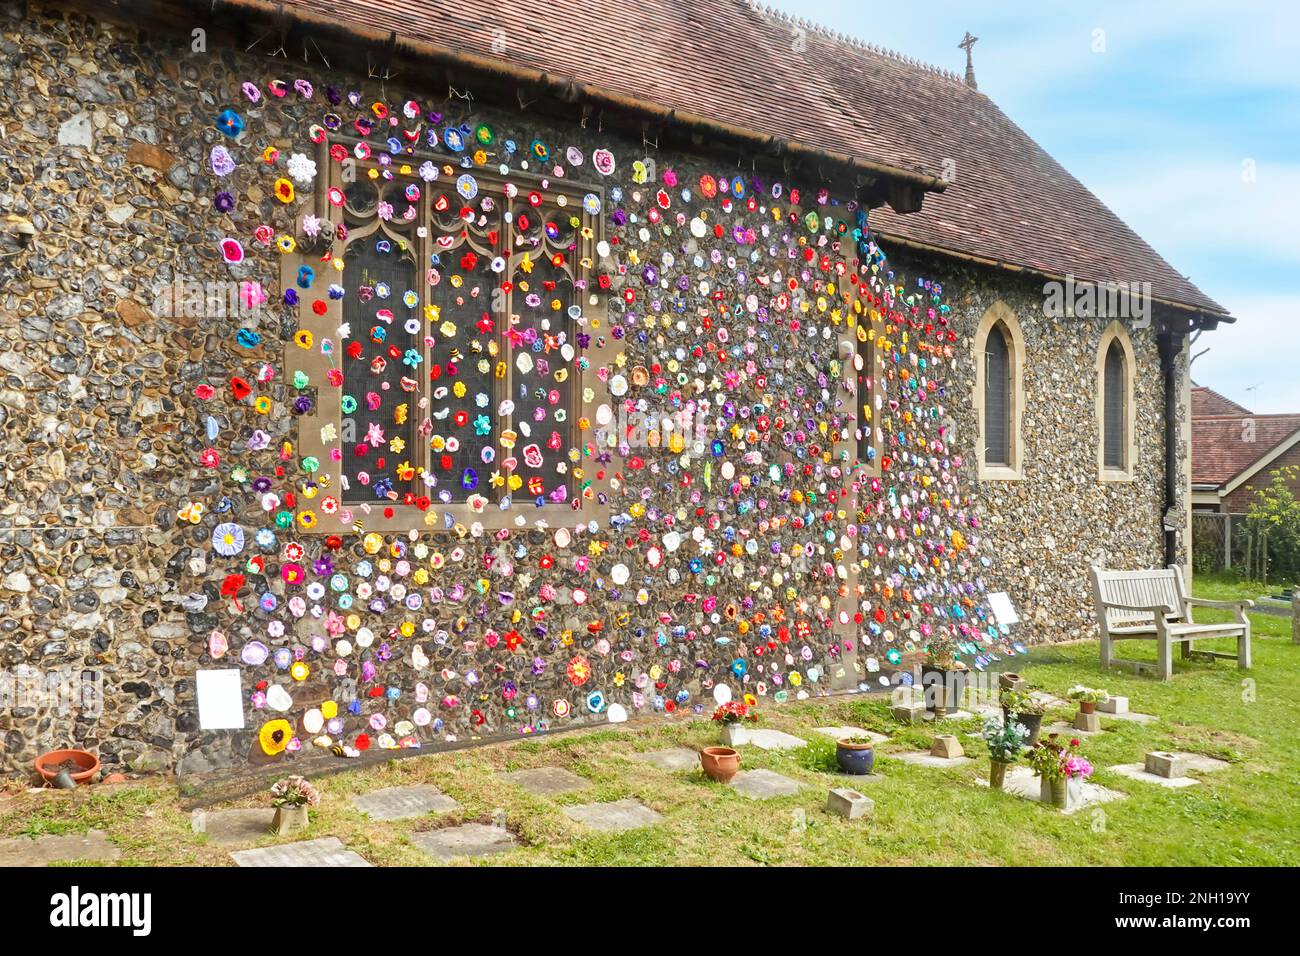 Doddinghurst tous les saints paroissial église faite main fleurs crochet décorant externe pierre de silex mur nef pour village festival de fleur Essex Angleterre Royaume-Uni Banque D'Images